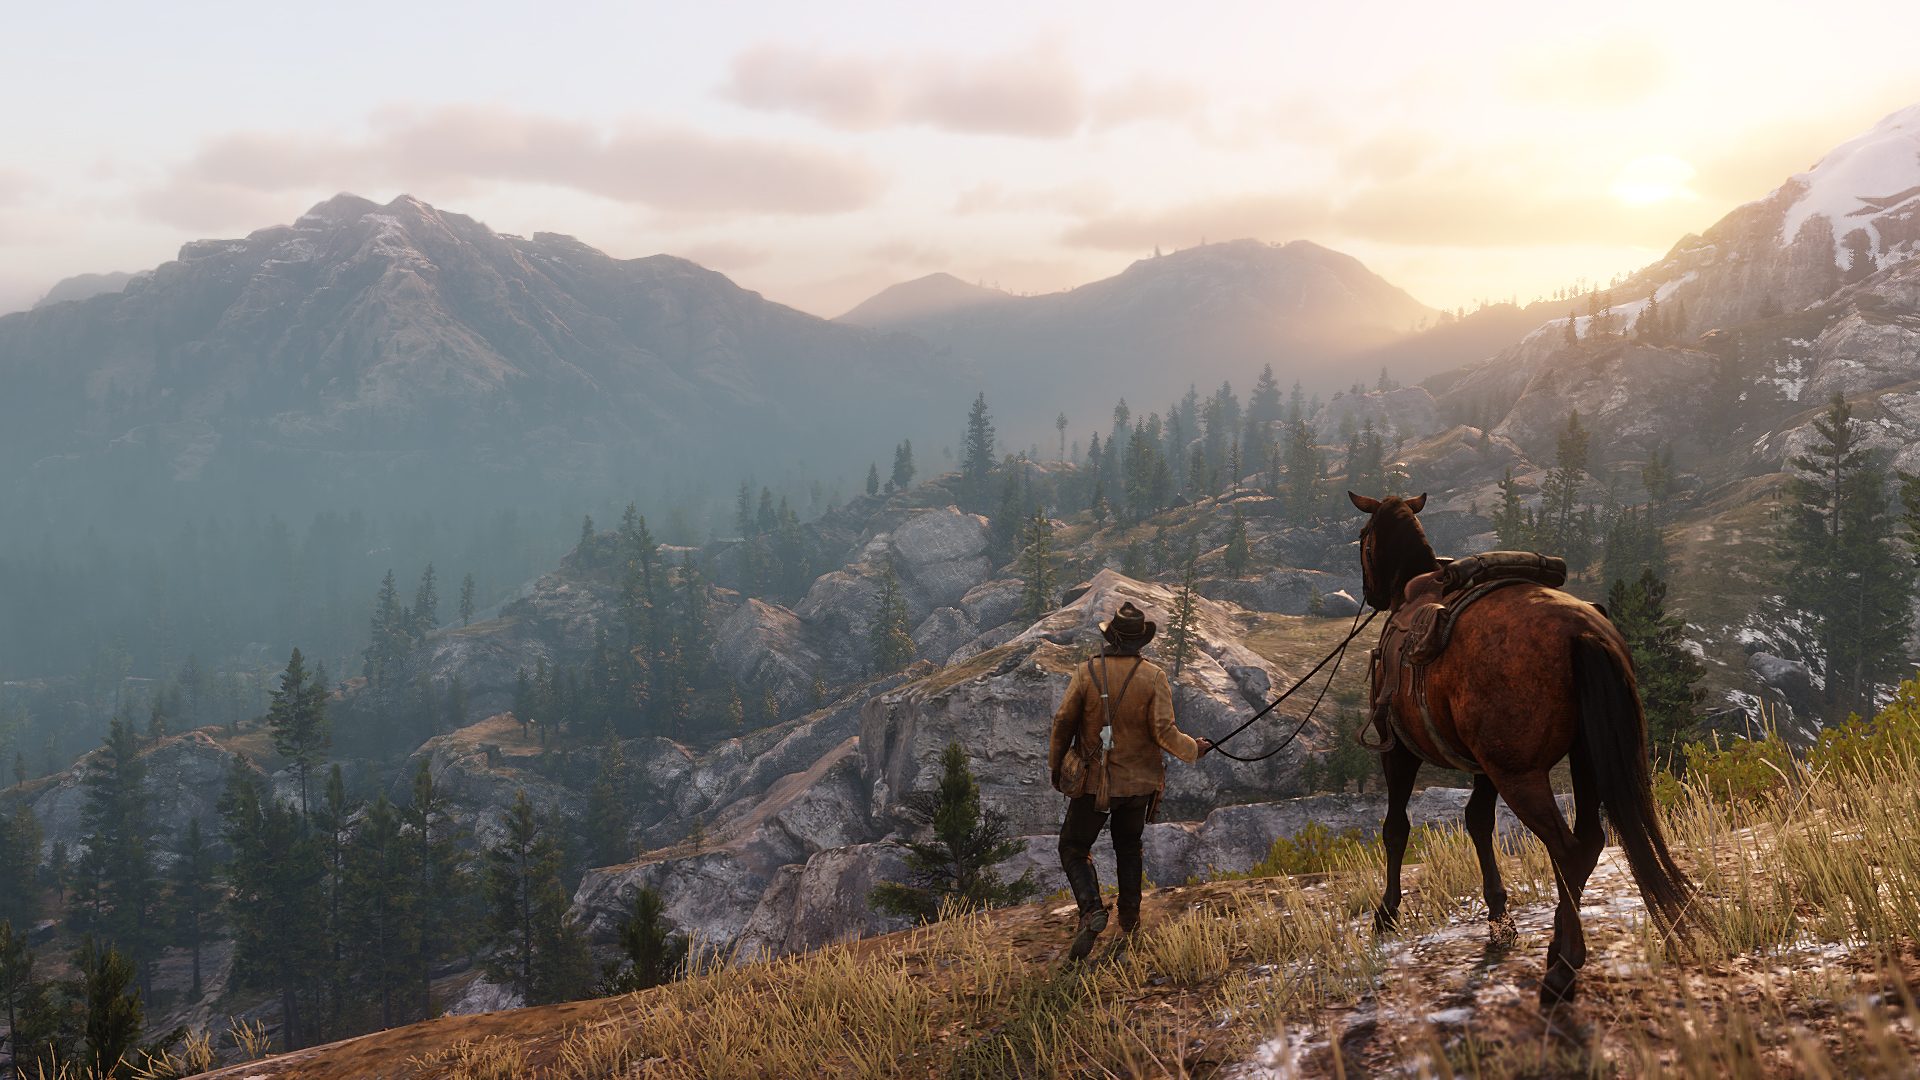 kuvankaappaus pelistä, mies taluttaa hevosta ja katselee kun aurinko laskee vuoren taakse